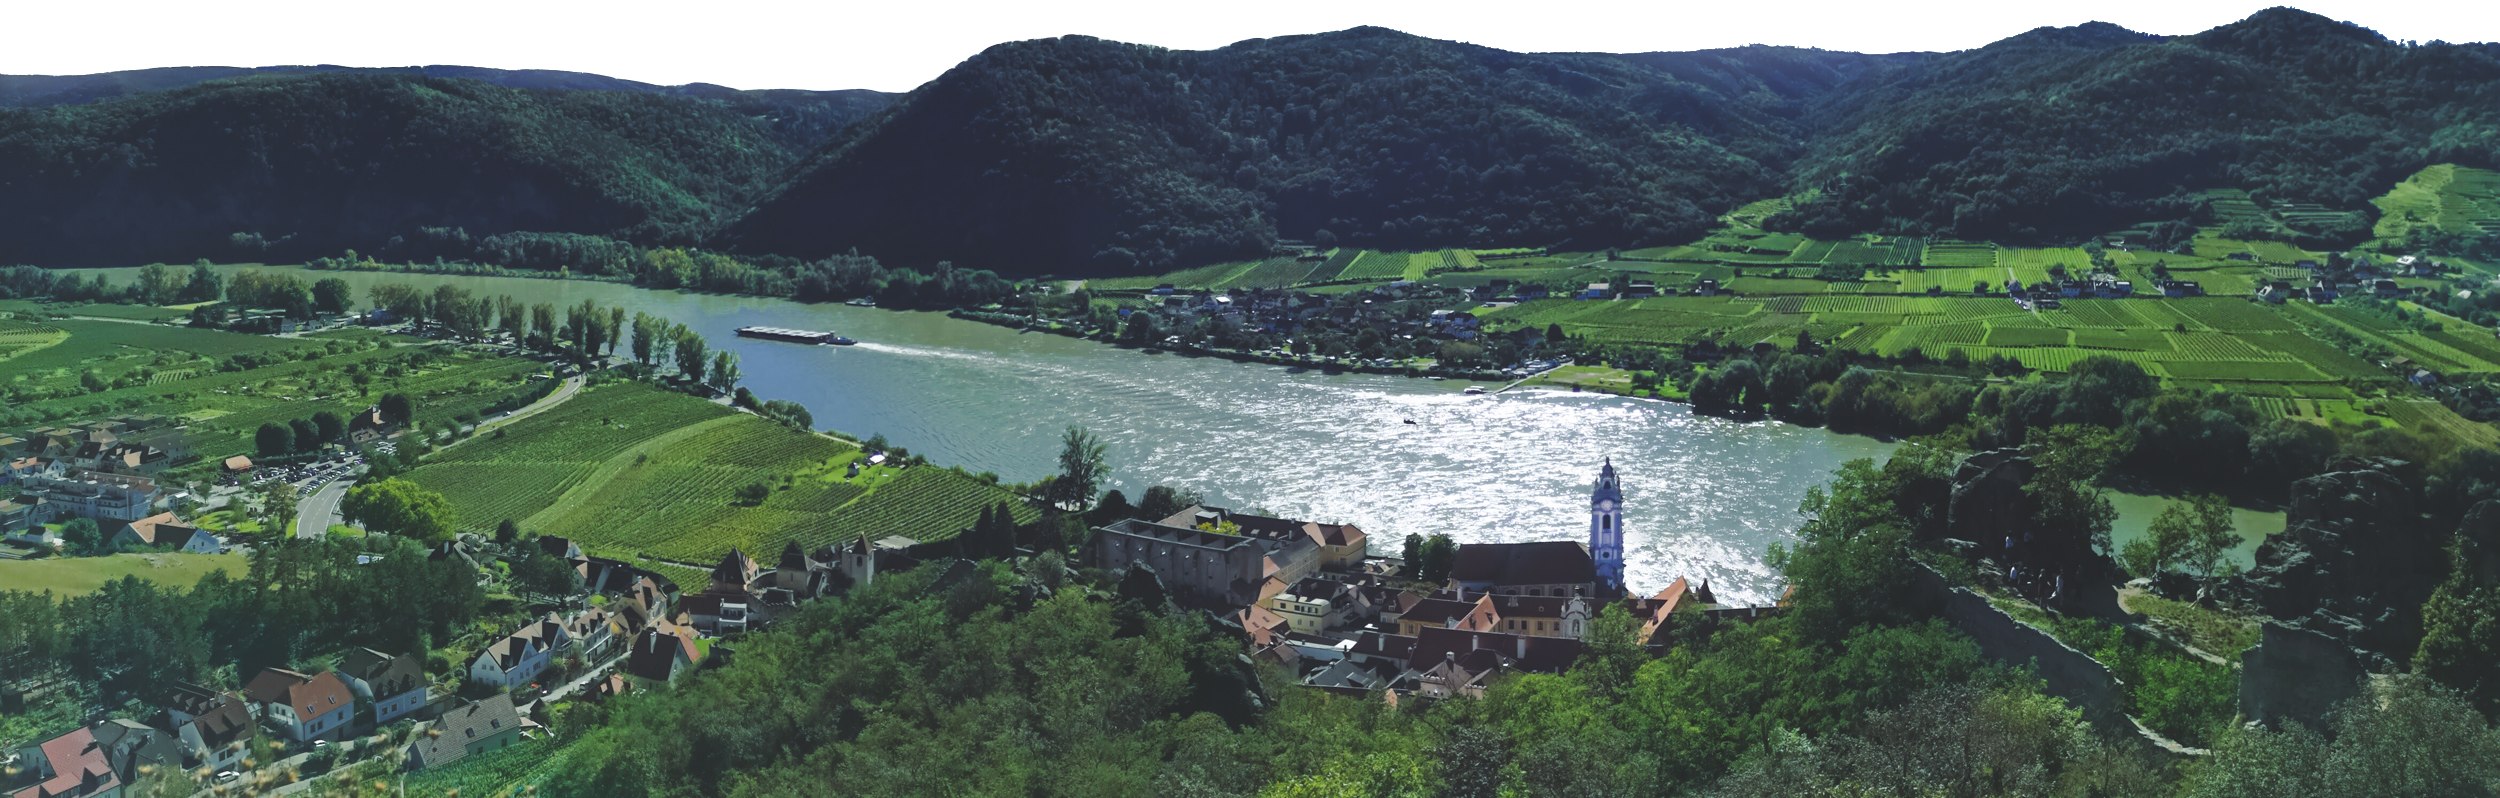 Dürnstein & Wachau Valley panorama in the Lower Austria